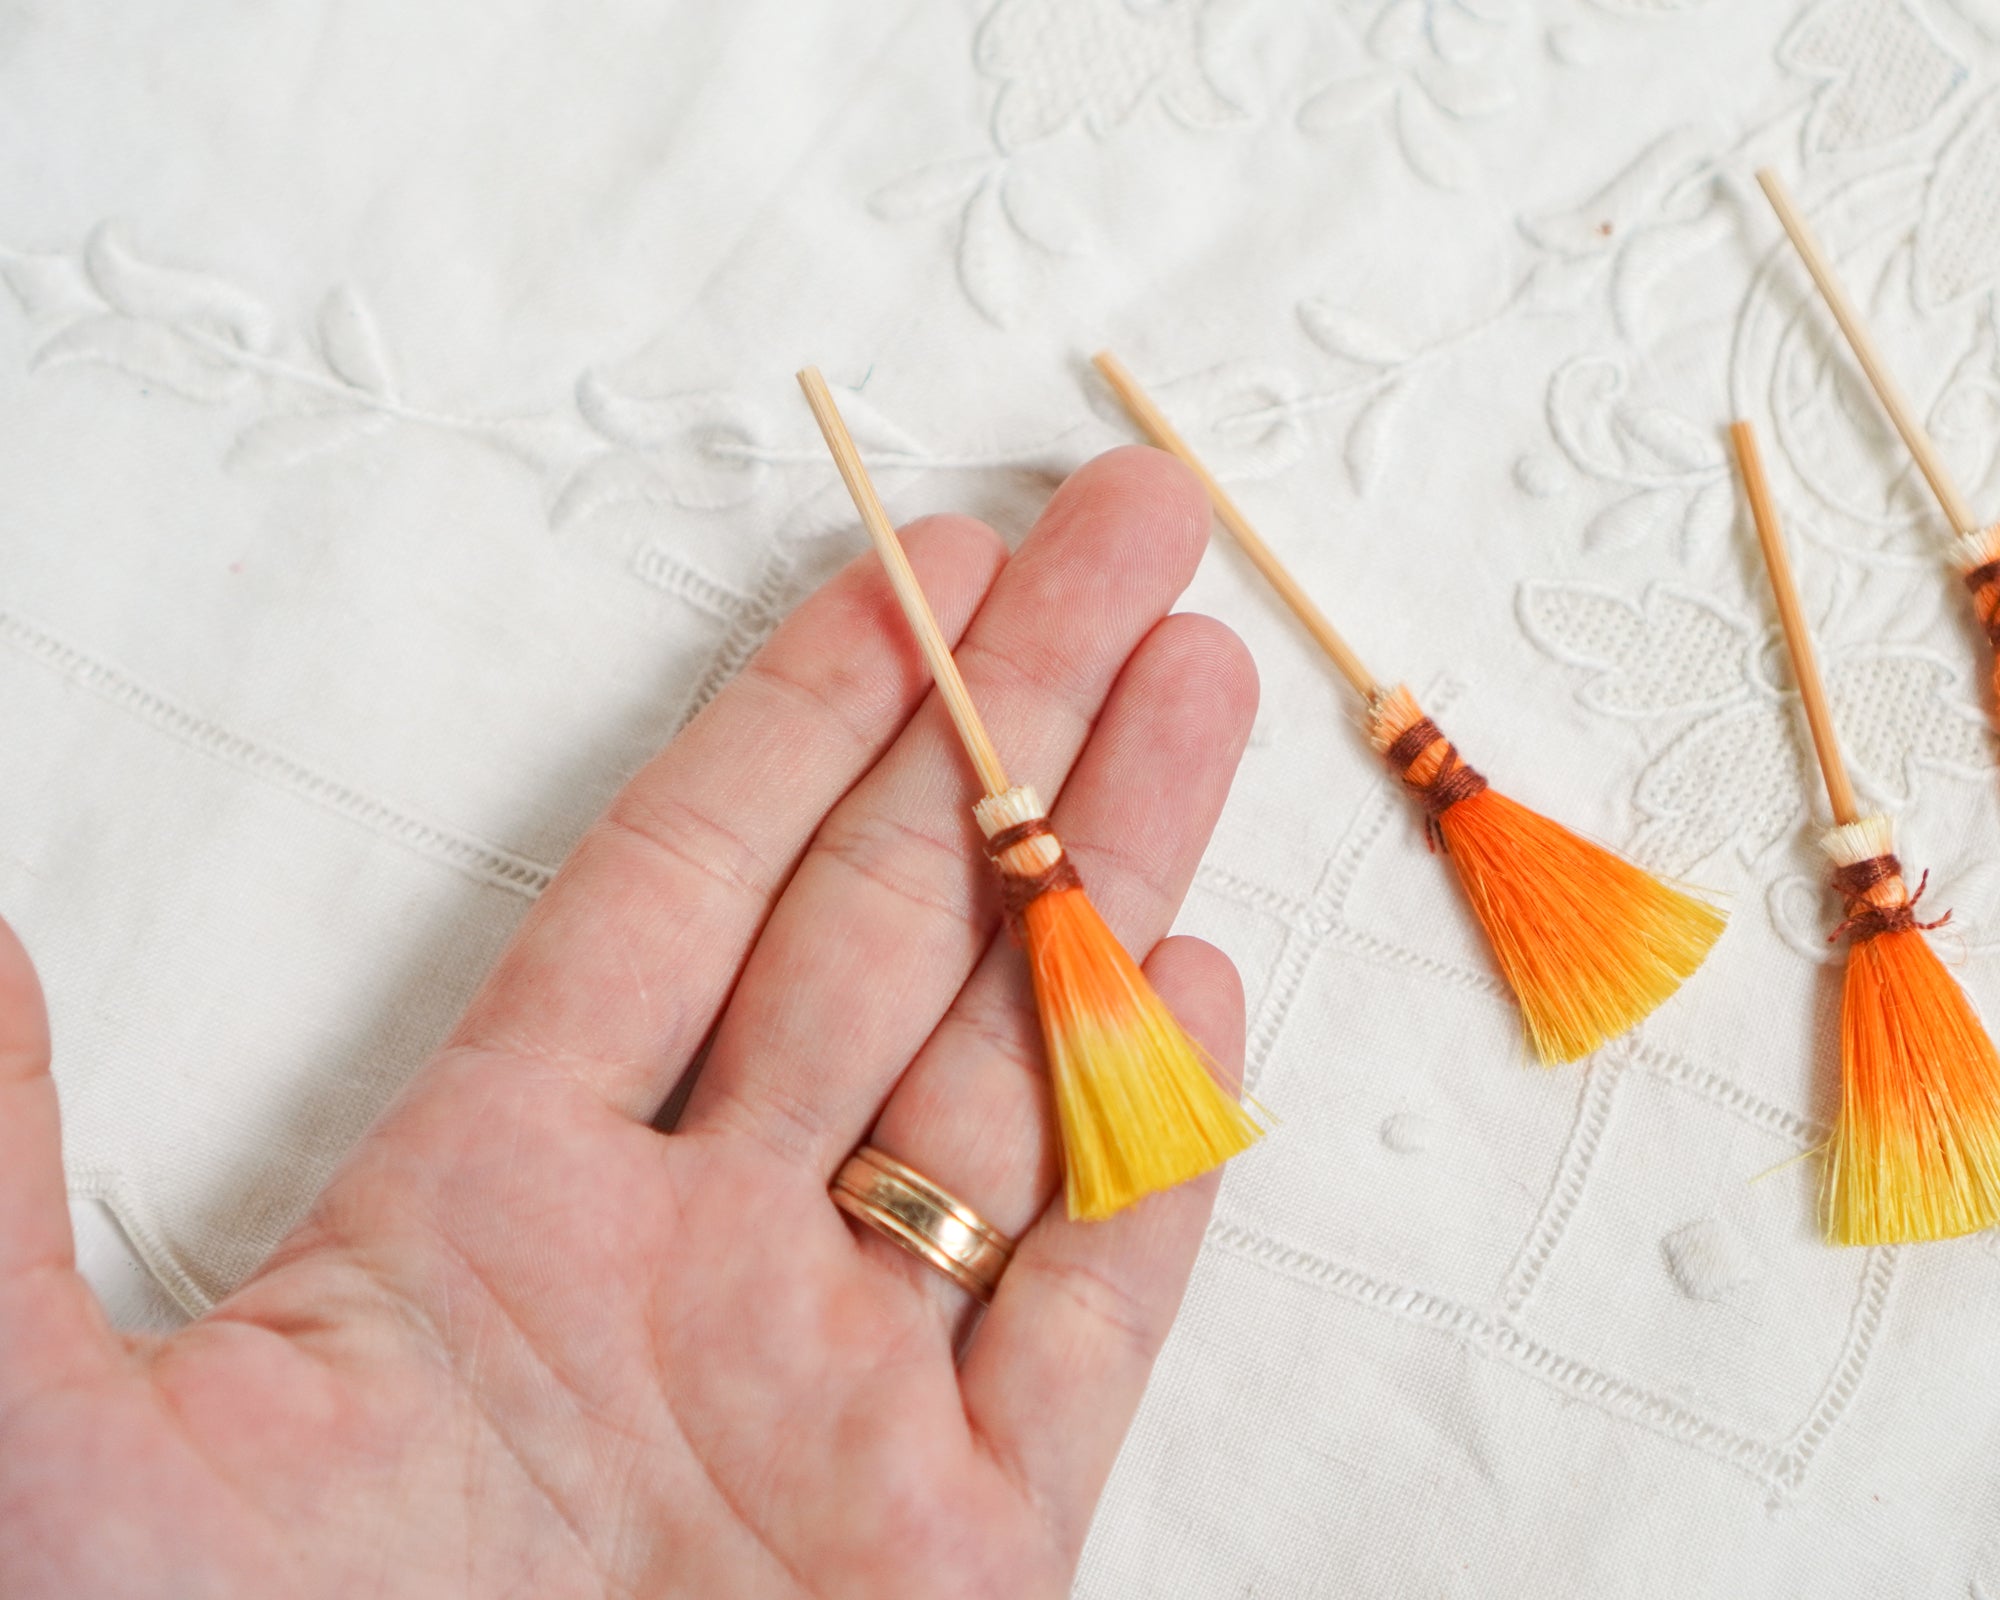 Miniature Candy Corn Brooms - 4 Tiny Dip-Dyed Sisal Mini Halloween Brooms